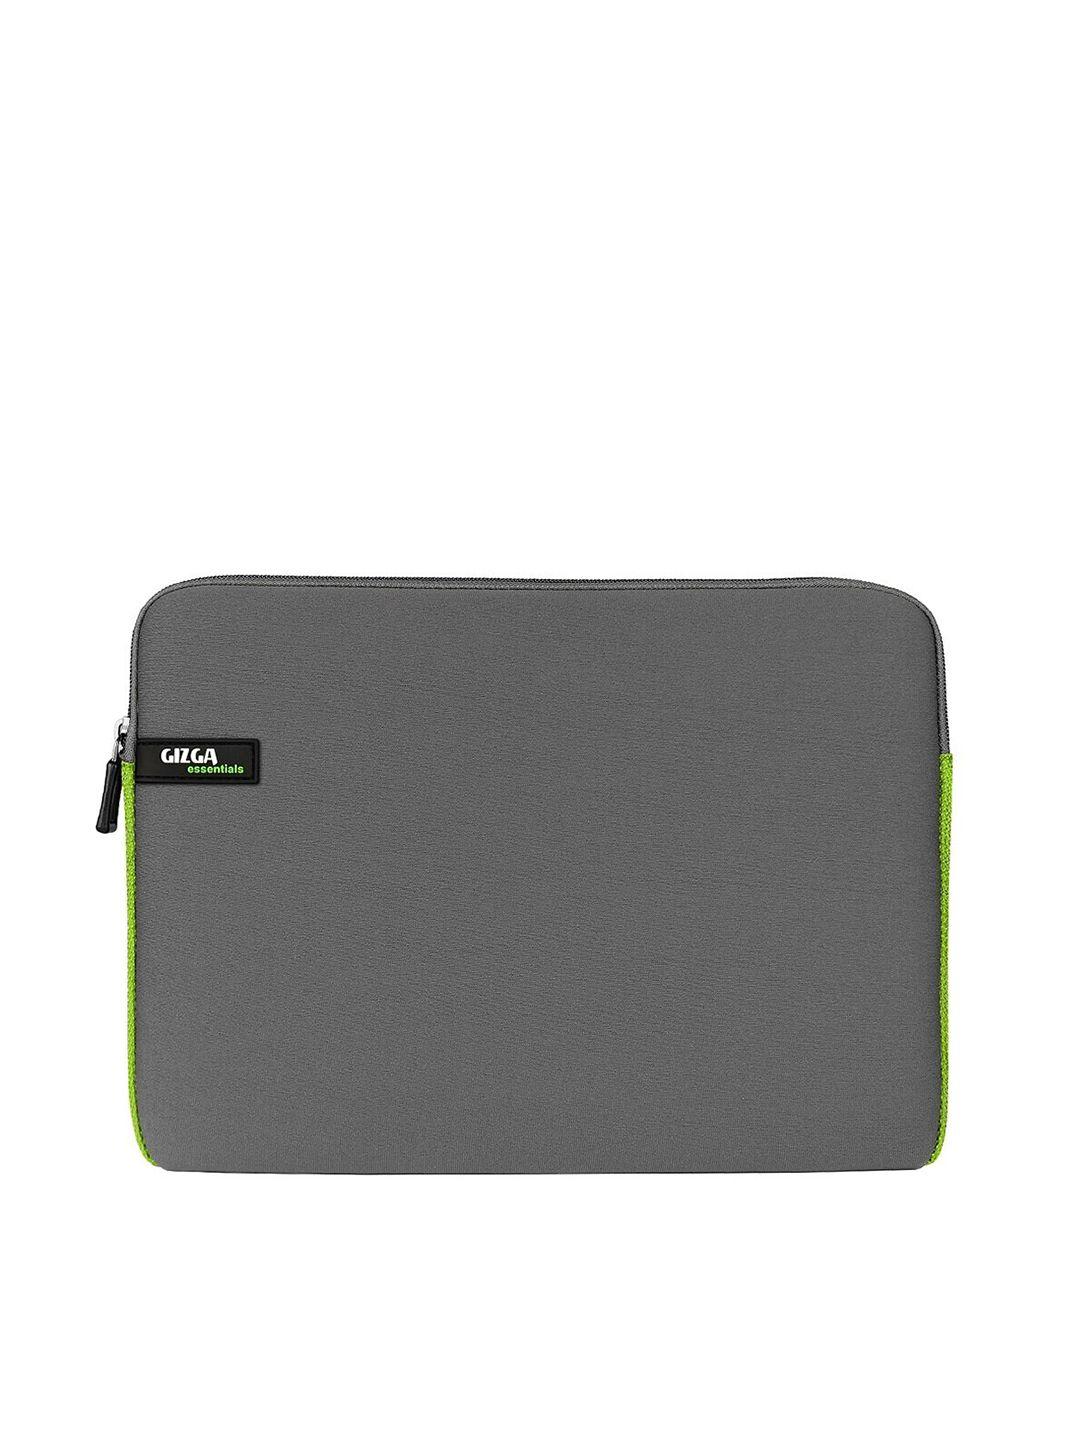 gizga essentials unisex grey laptop sleeve